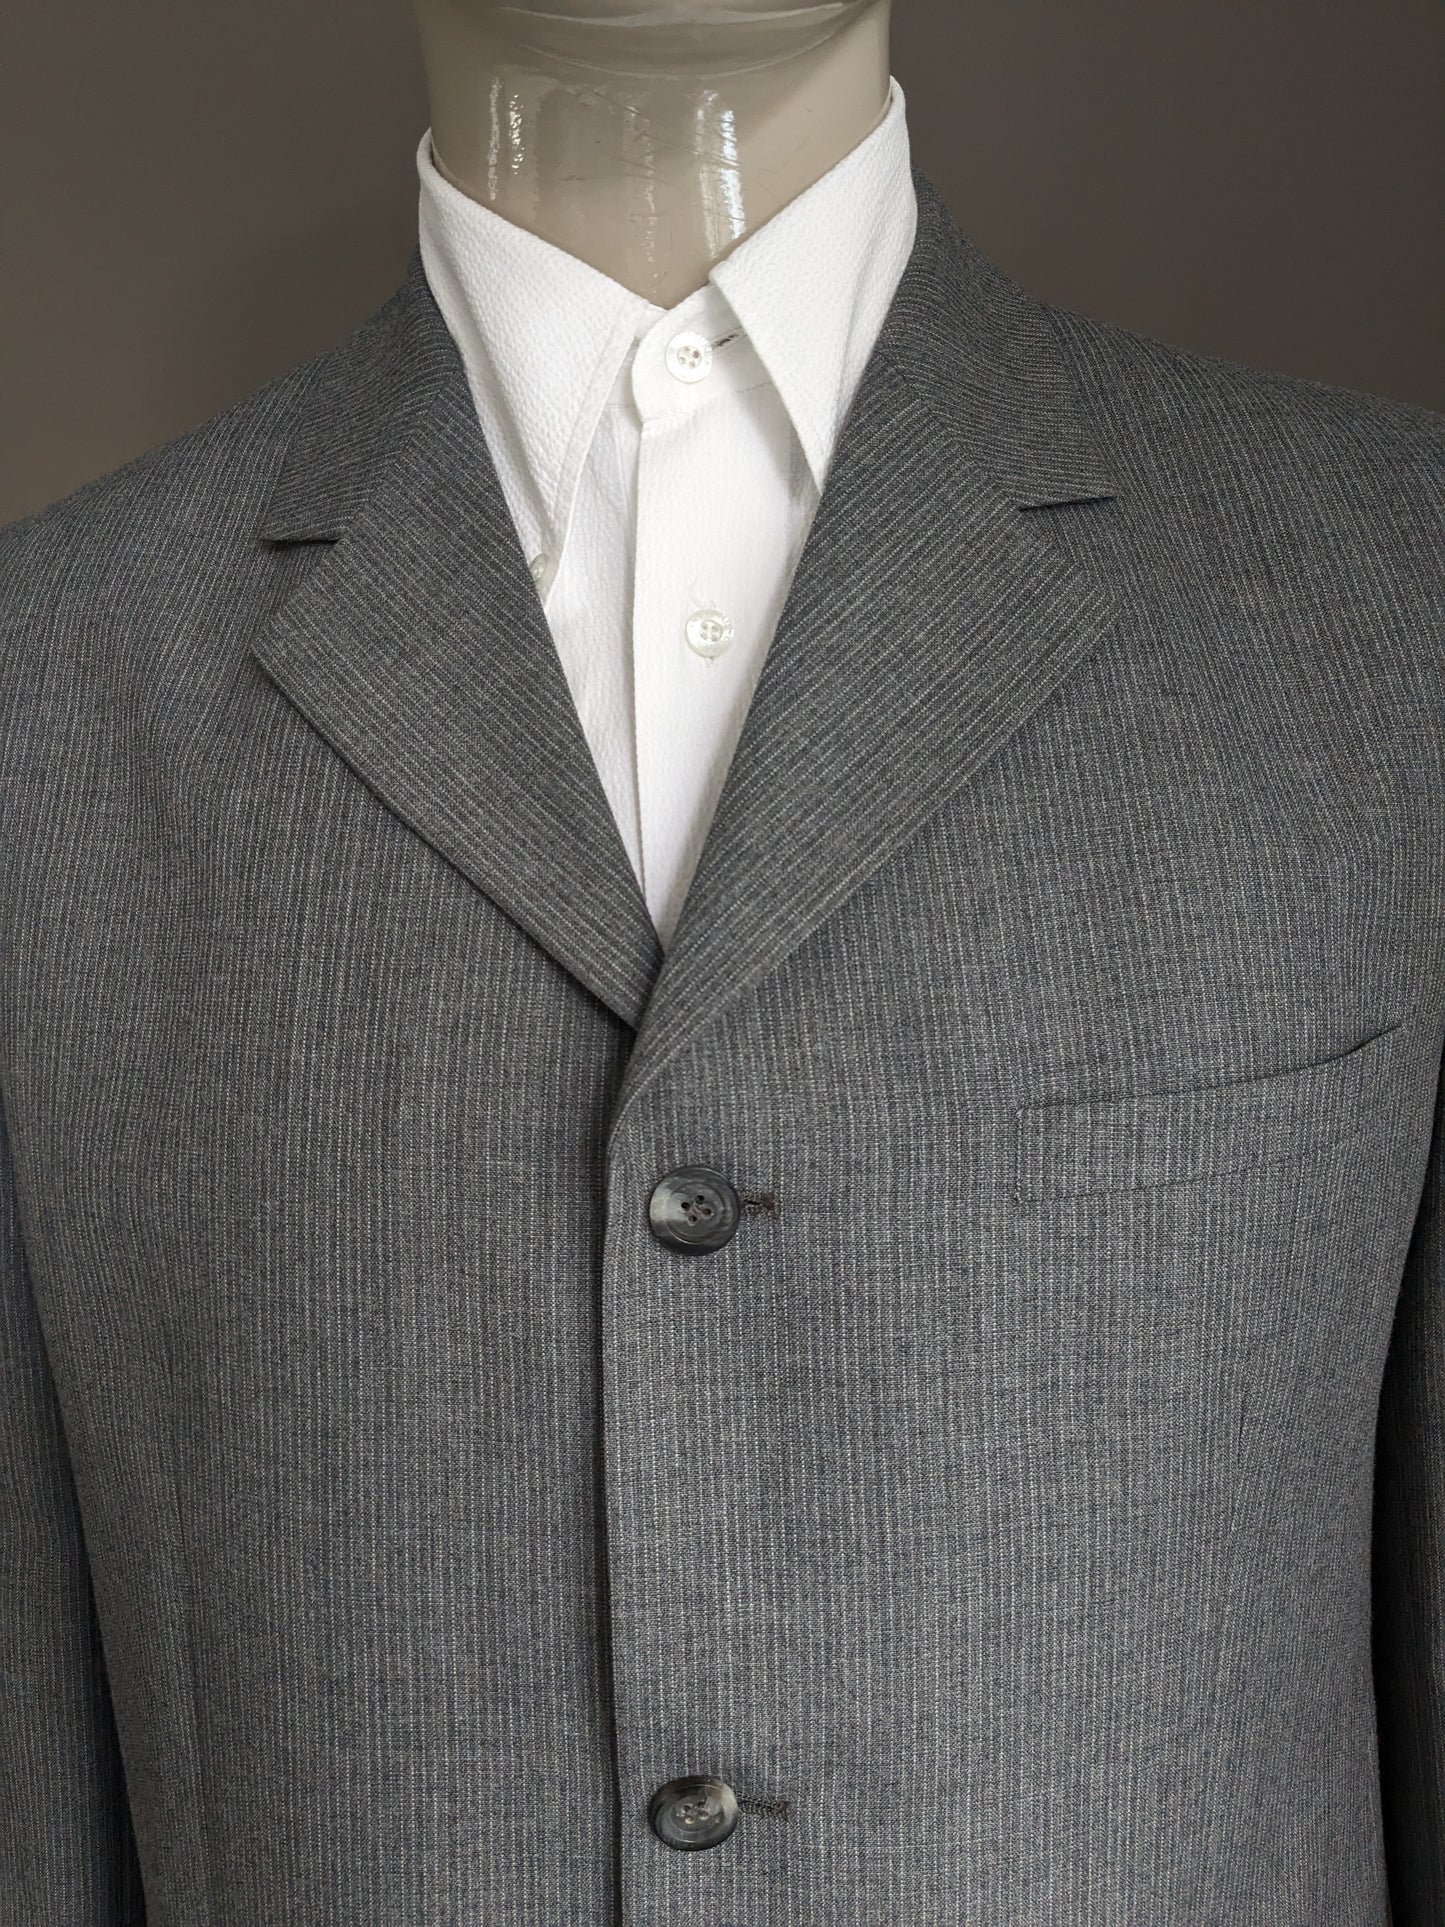 Mexx jacket. Gray white striped. Size 52 / L.